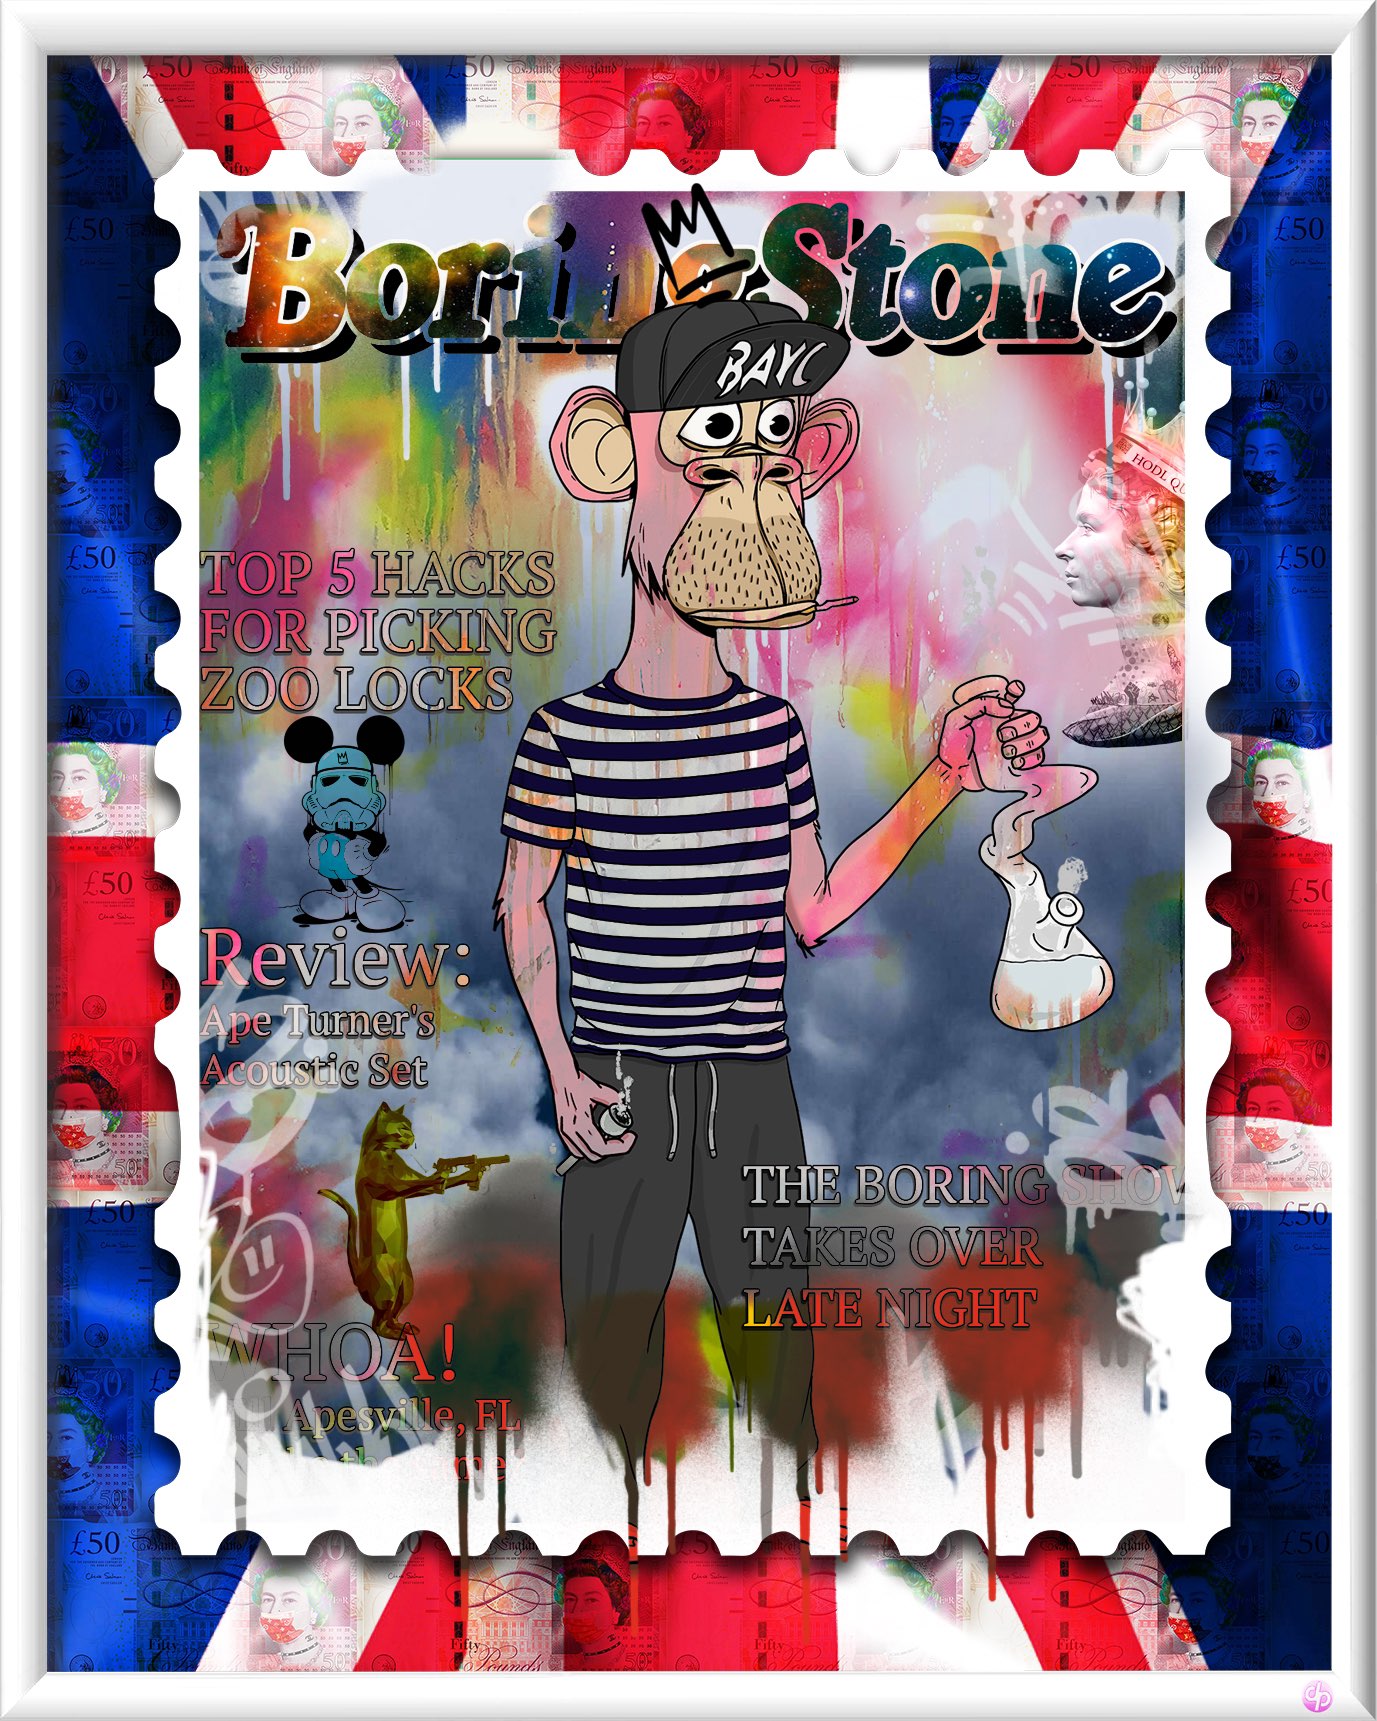 BoringStoneNFT Art - Dan Pearce